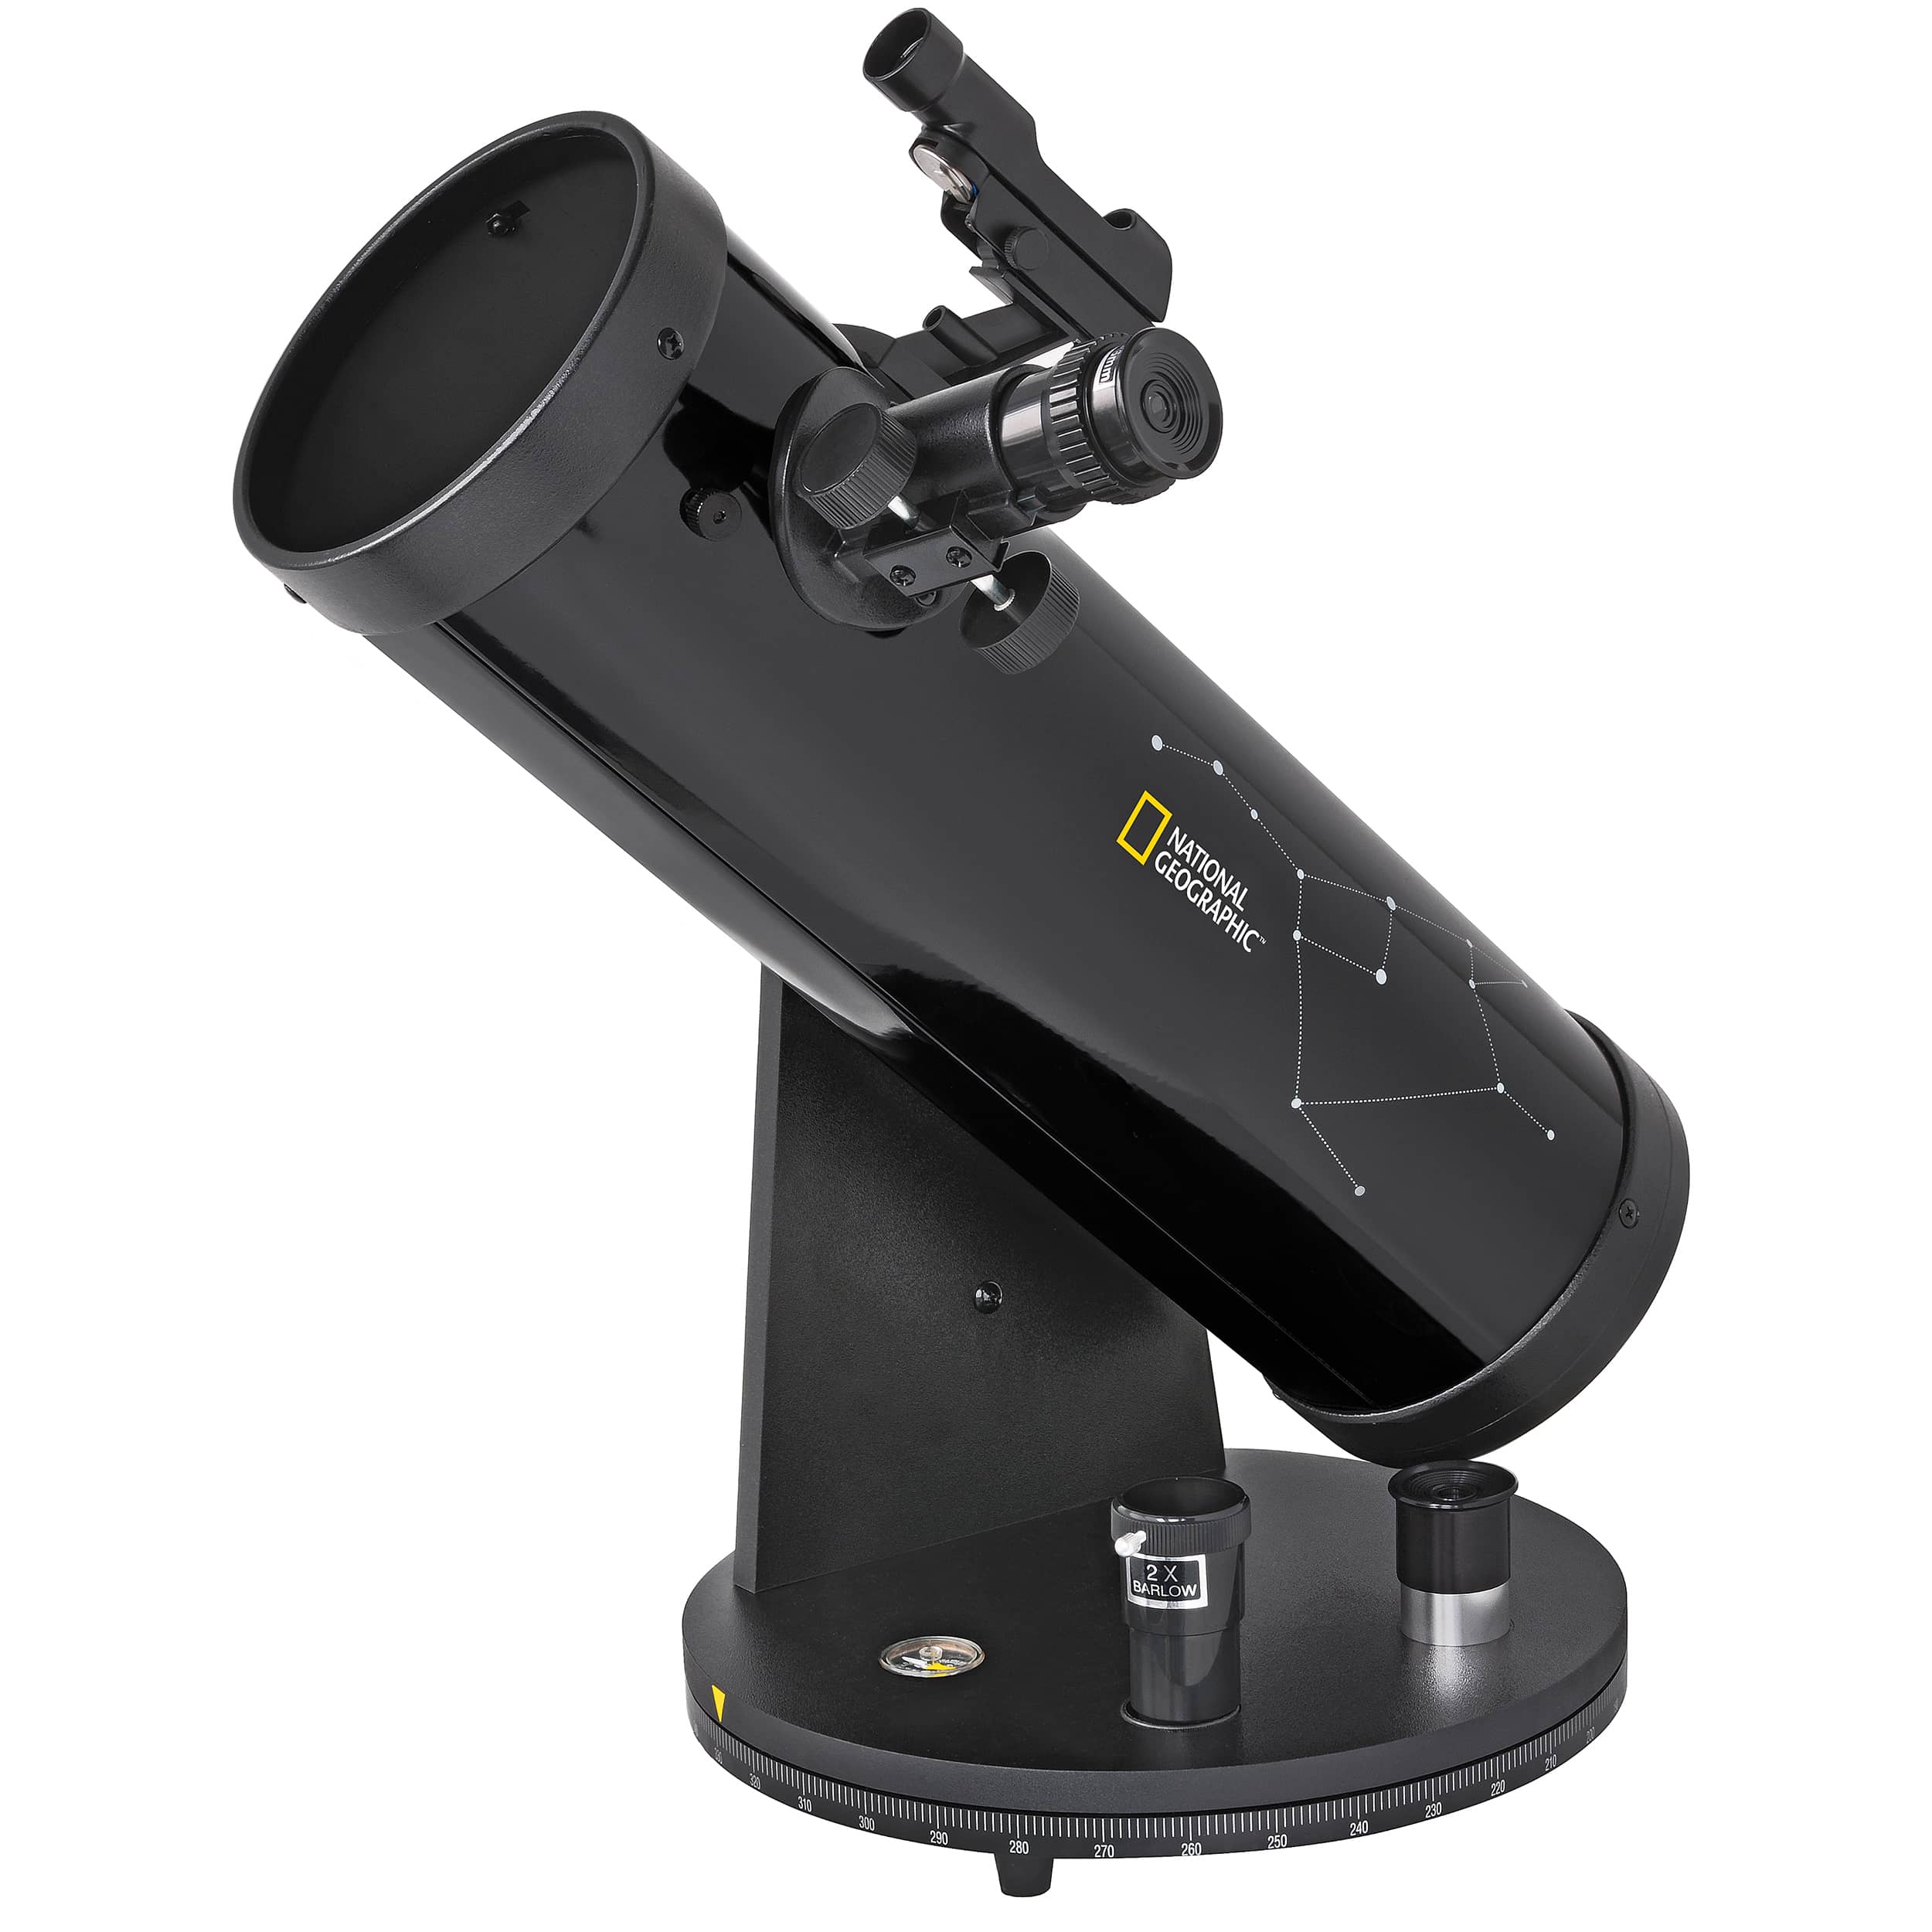  Il telescopio compatto NATIONAL GEOGRAPHIC 114/500 è un telescopio riflettore ideale per i principianti, con accessori completi e tante possibilità di fare osservazioni 